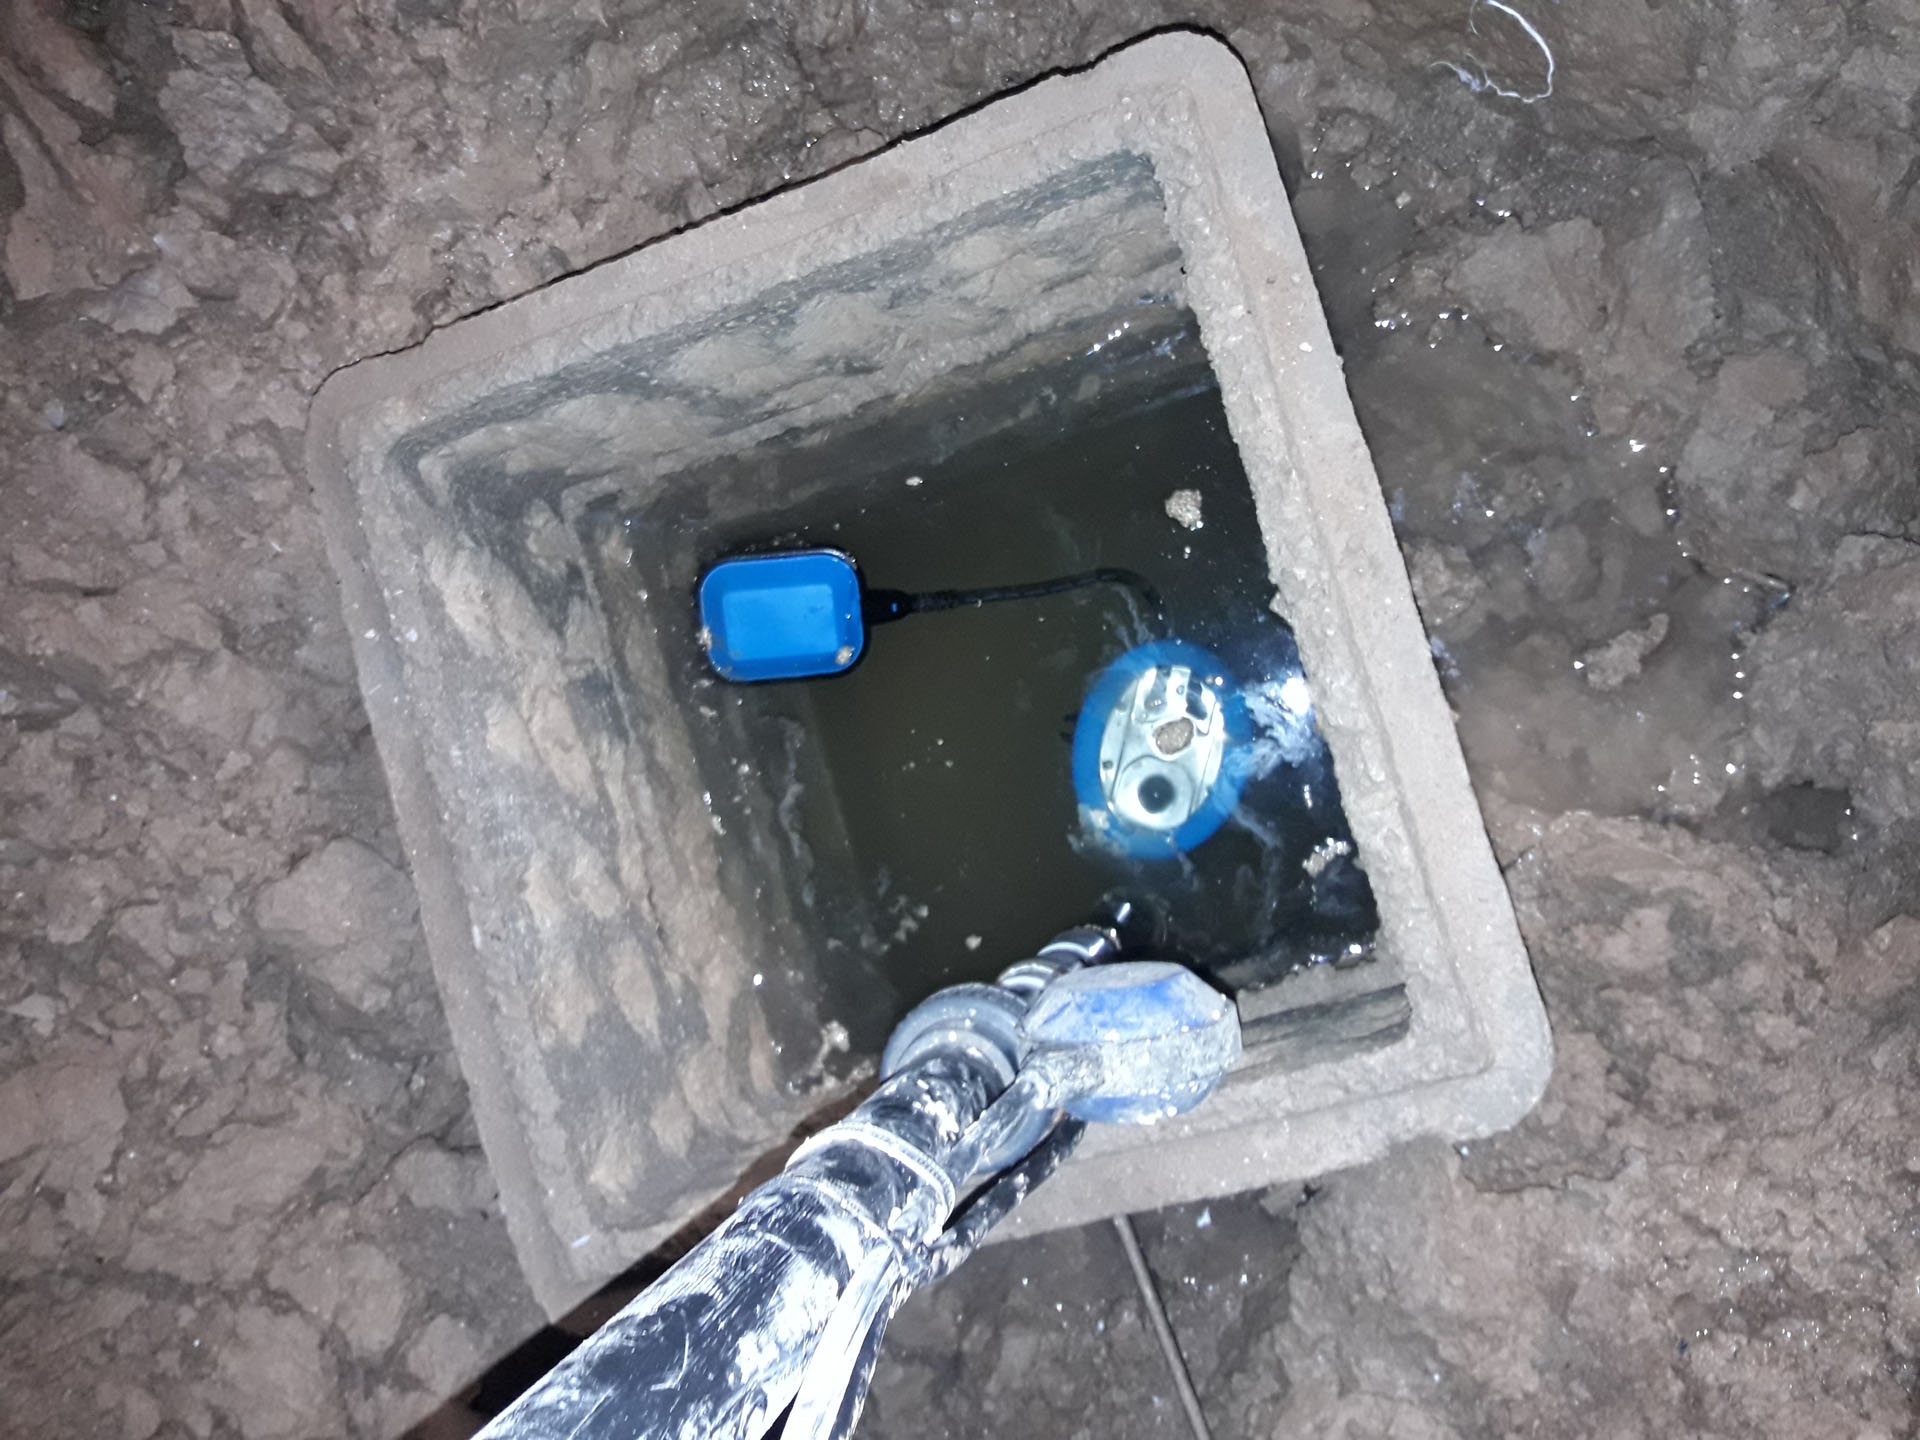 Remplacement de pompe de relevage dans vide sanitaire à Gardanne.